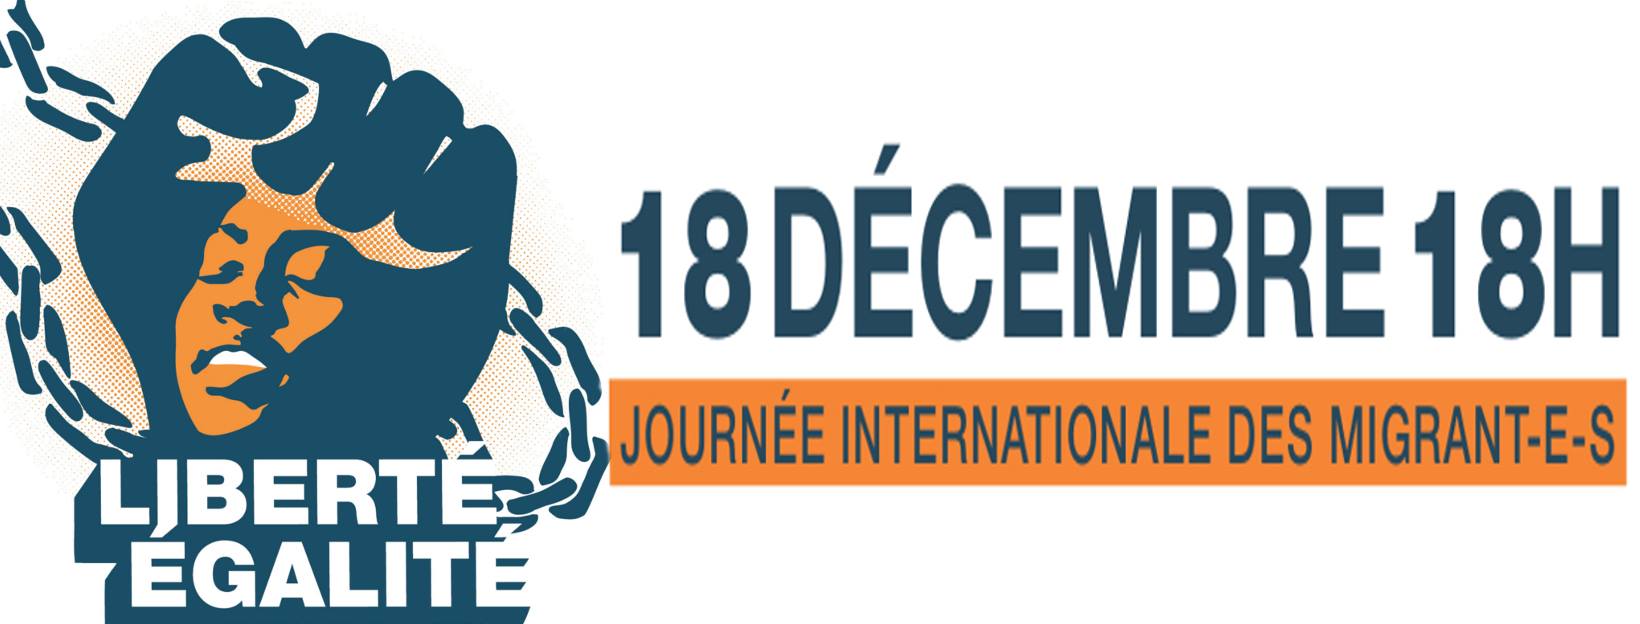 18 décembre 2018 - Journée Internationale des Migrants